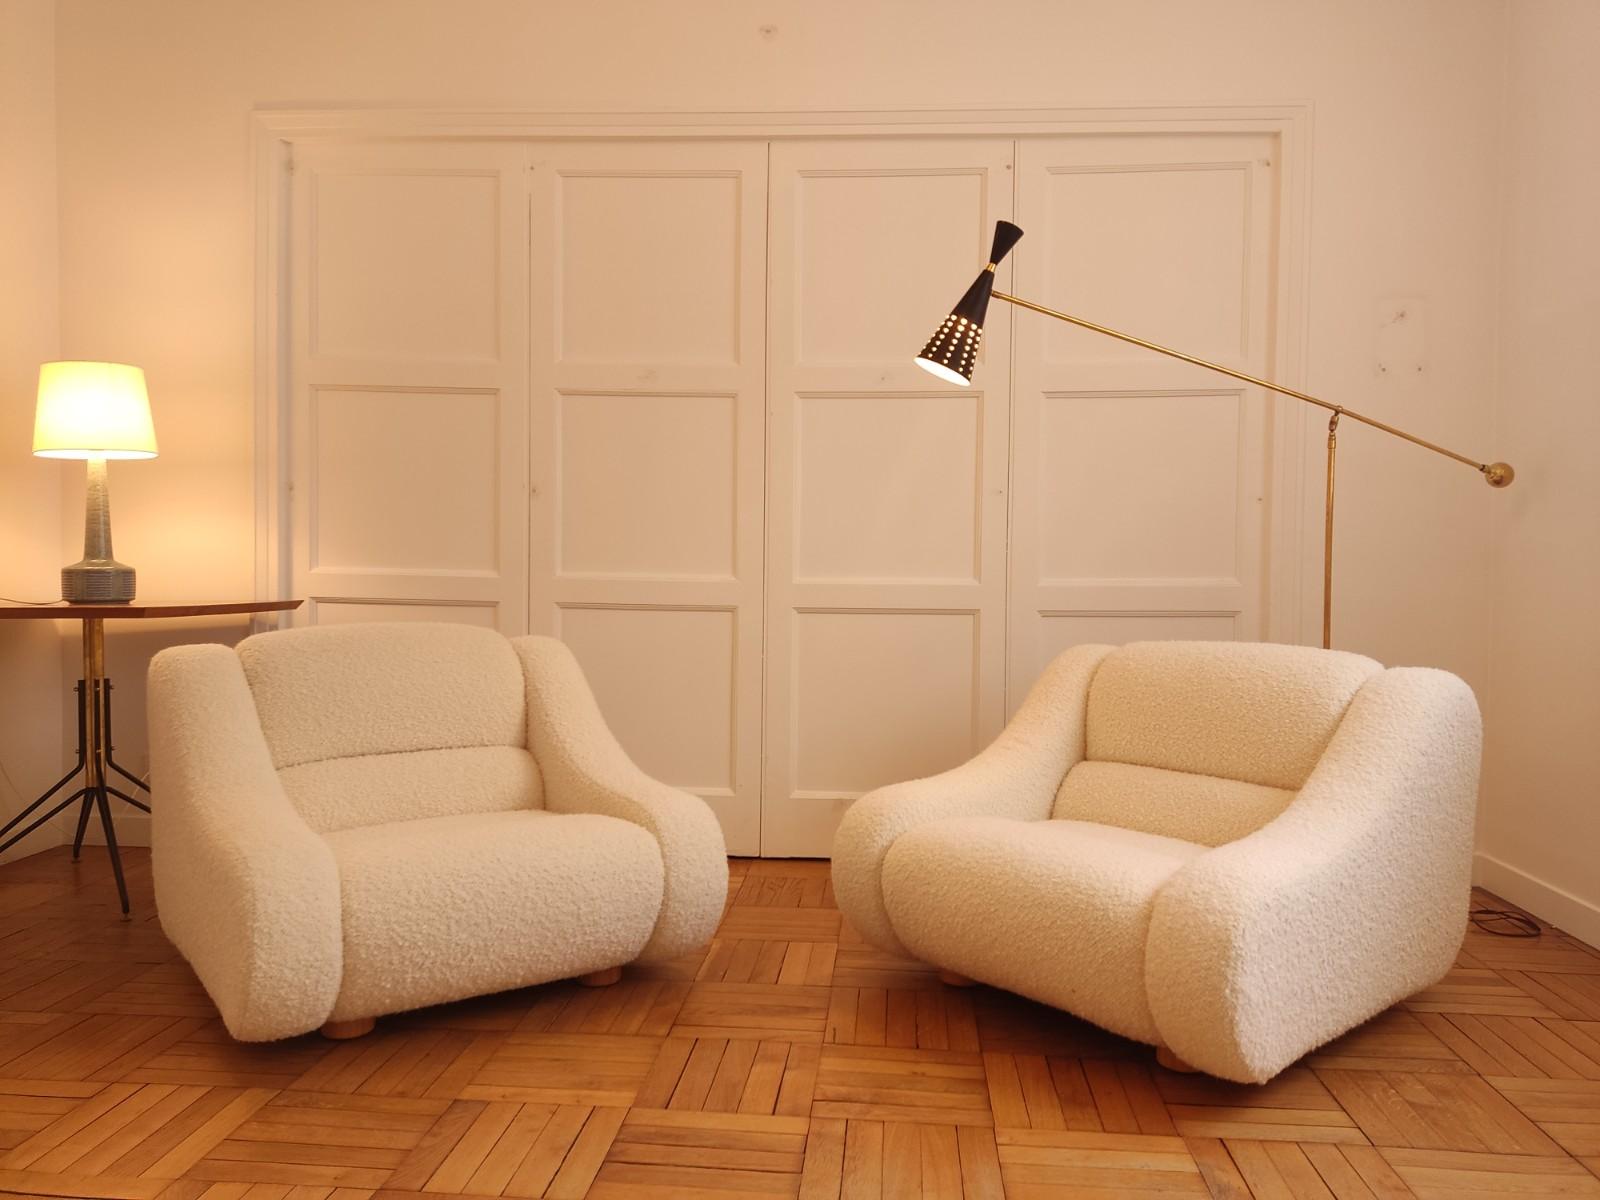 Paire de fauteuils italiens des années 1970 entièrement restaurés dans un bouclé crème. Provenant de la maison anglaise Designers Guild. Un design unique qui donnera beaucoup de caractère à votre intérieur.